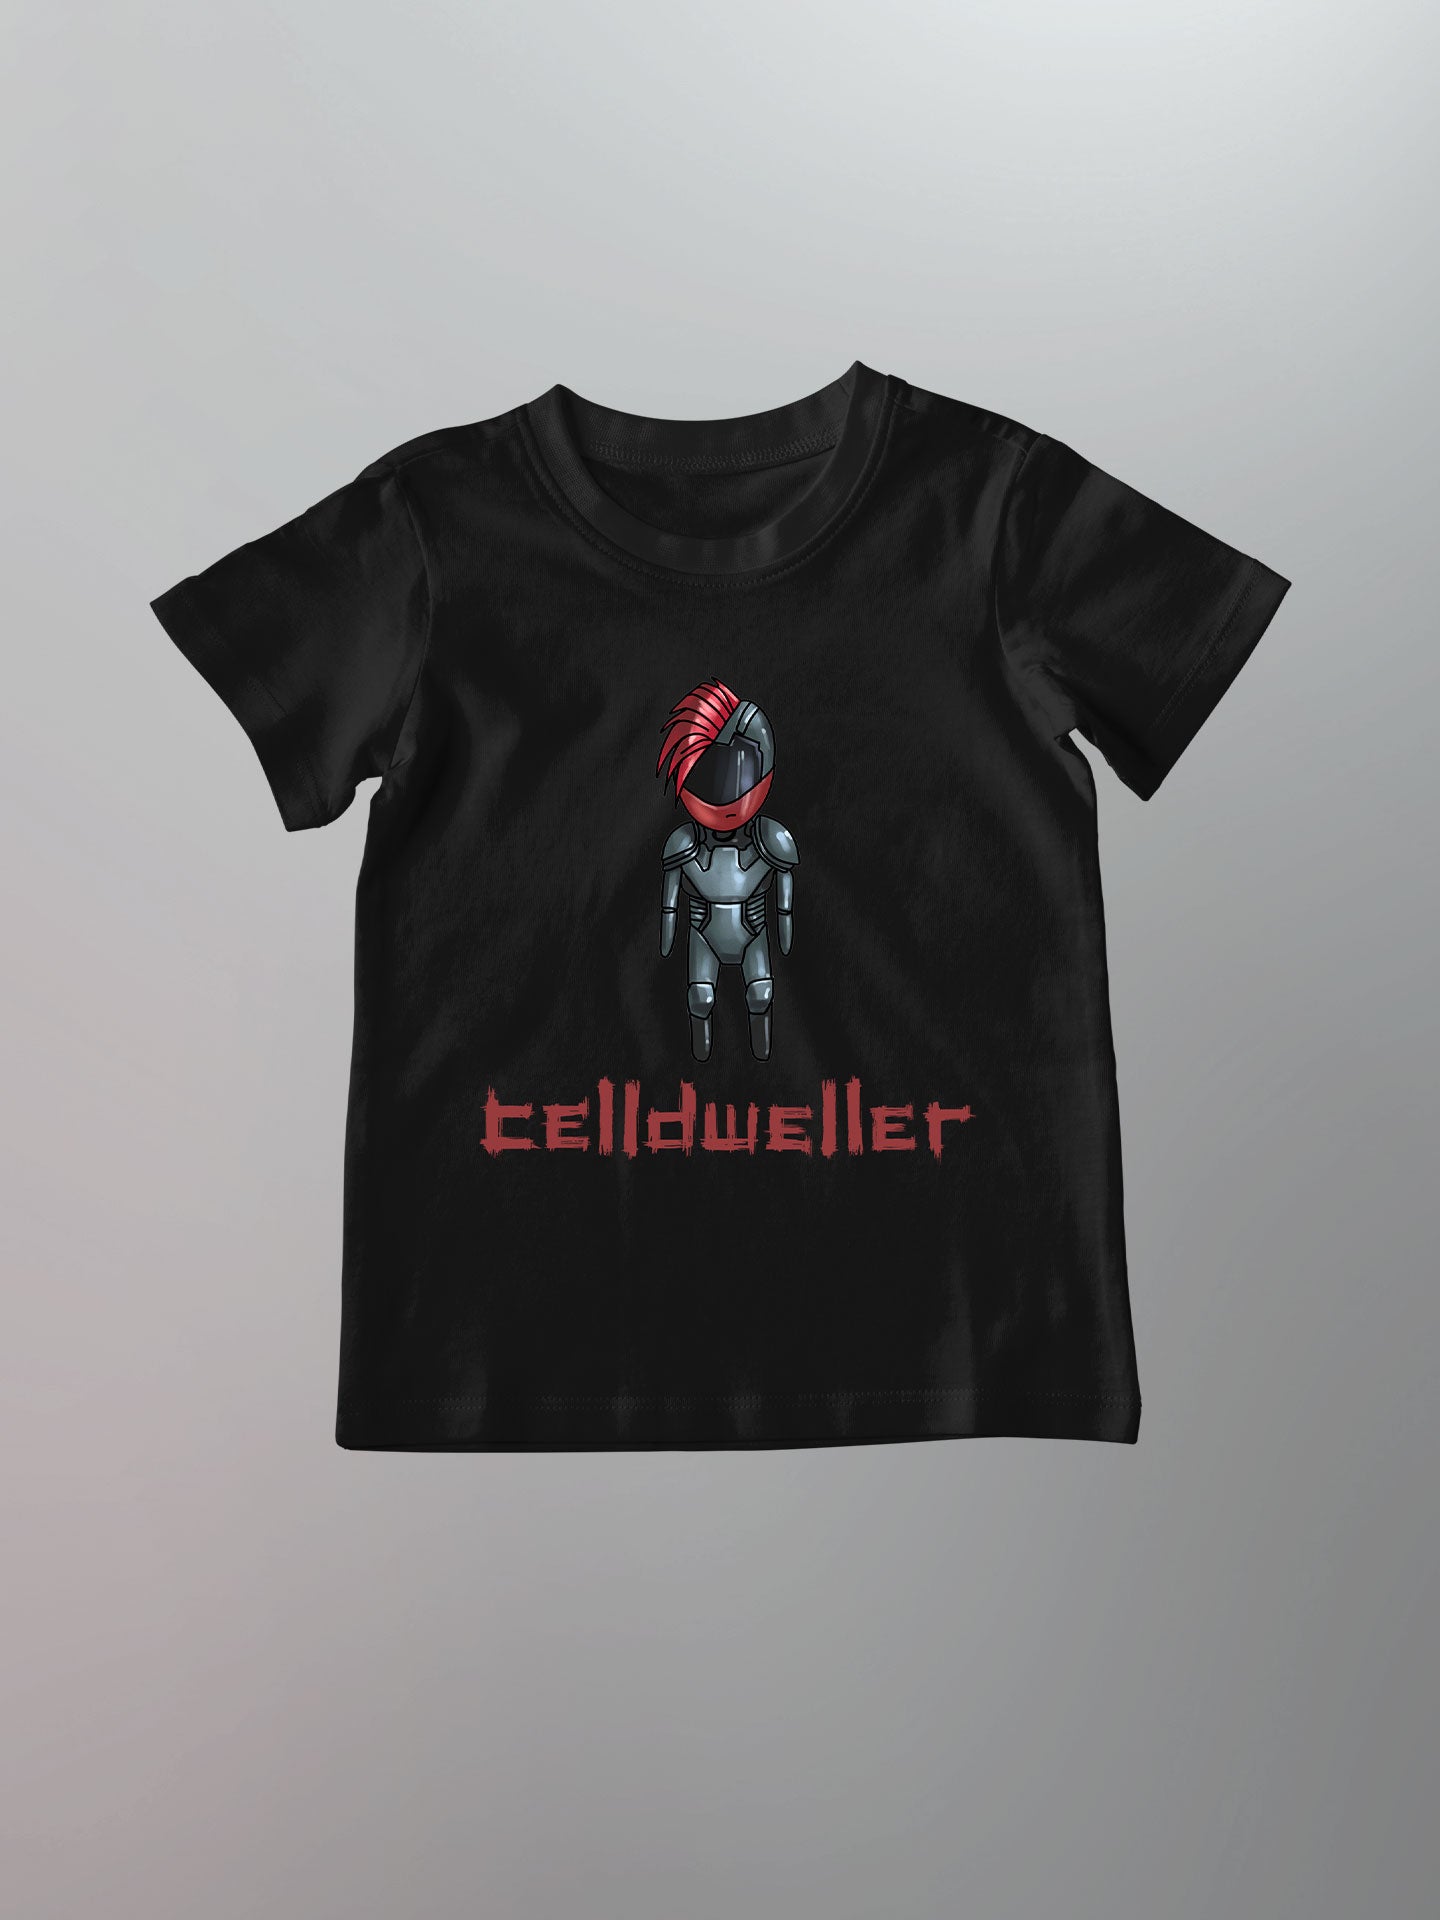 Celldweller - Emperor Chibi Shirt [Toddler/Youth]